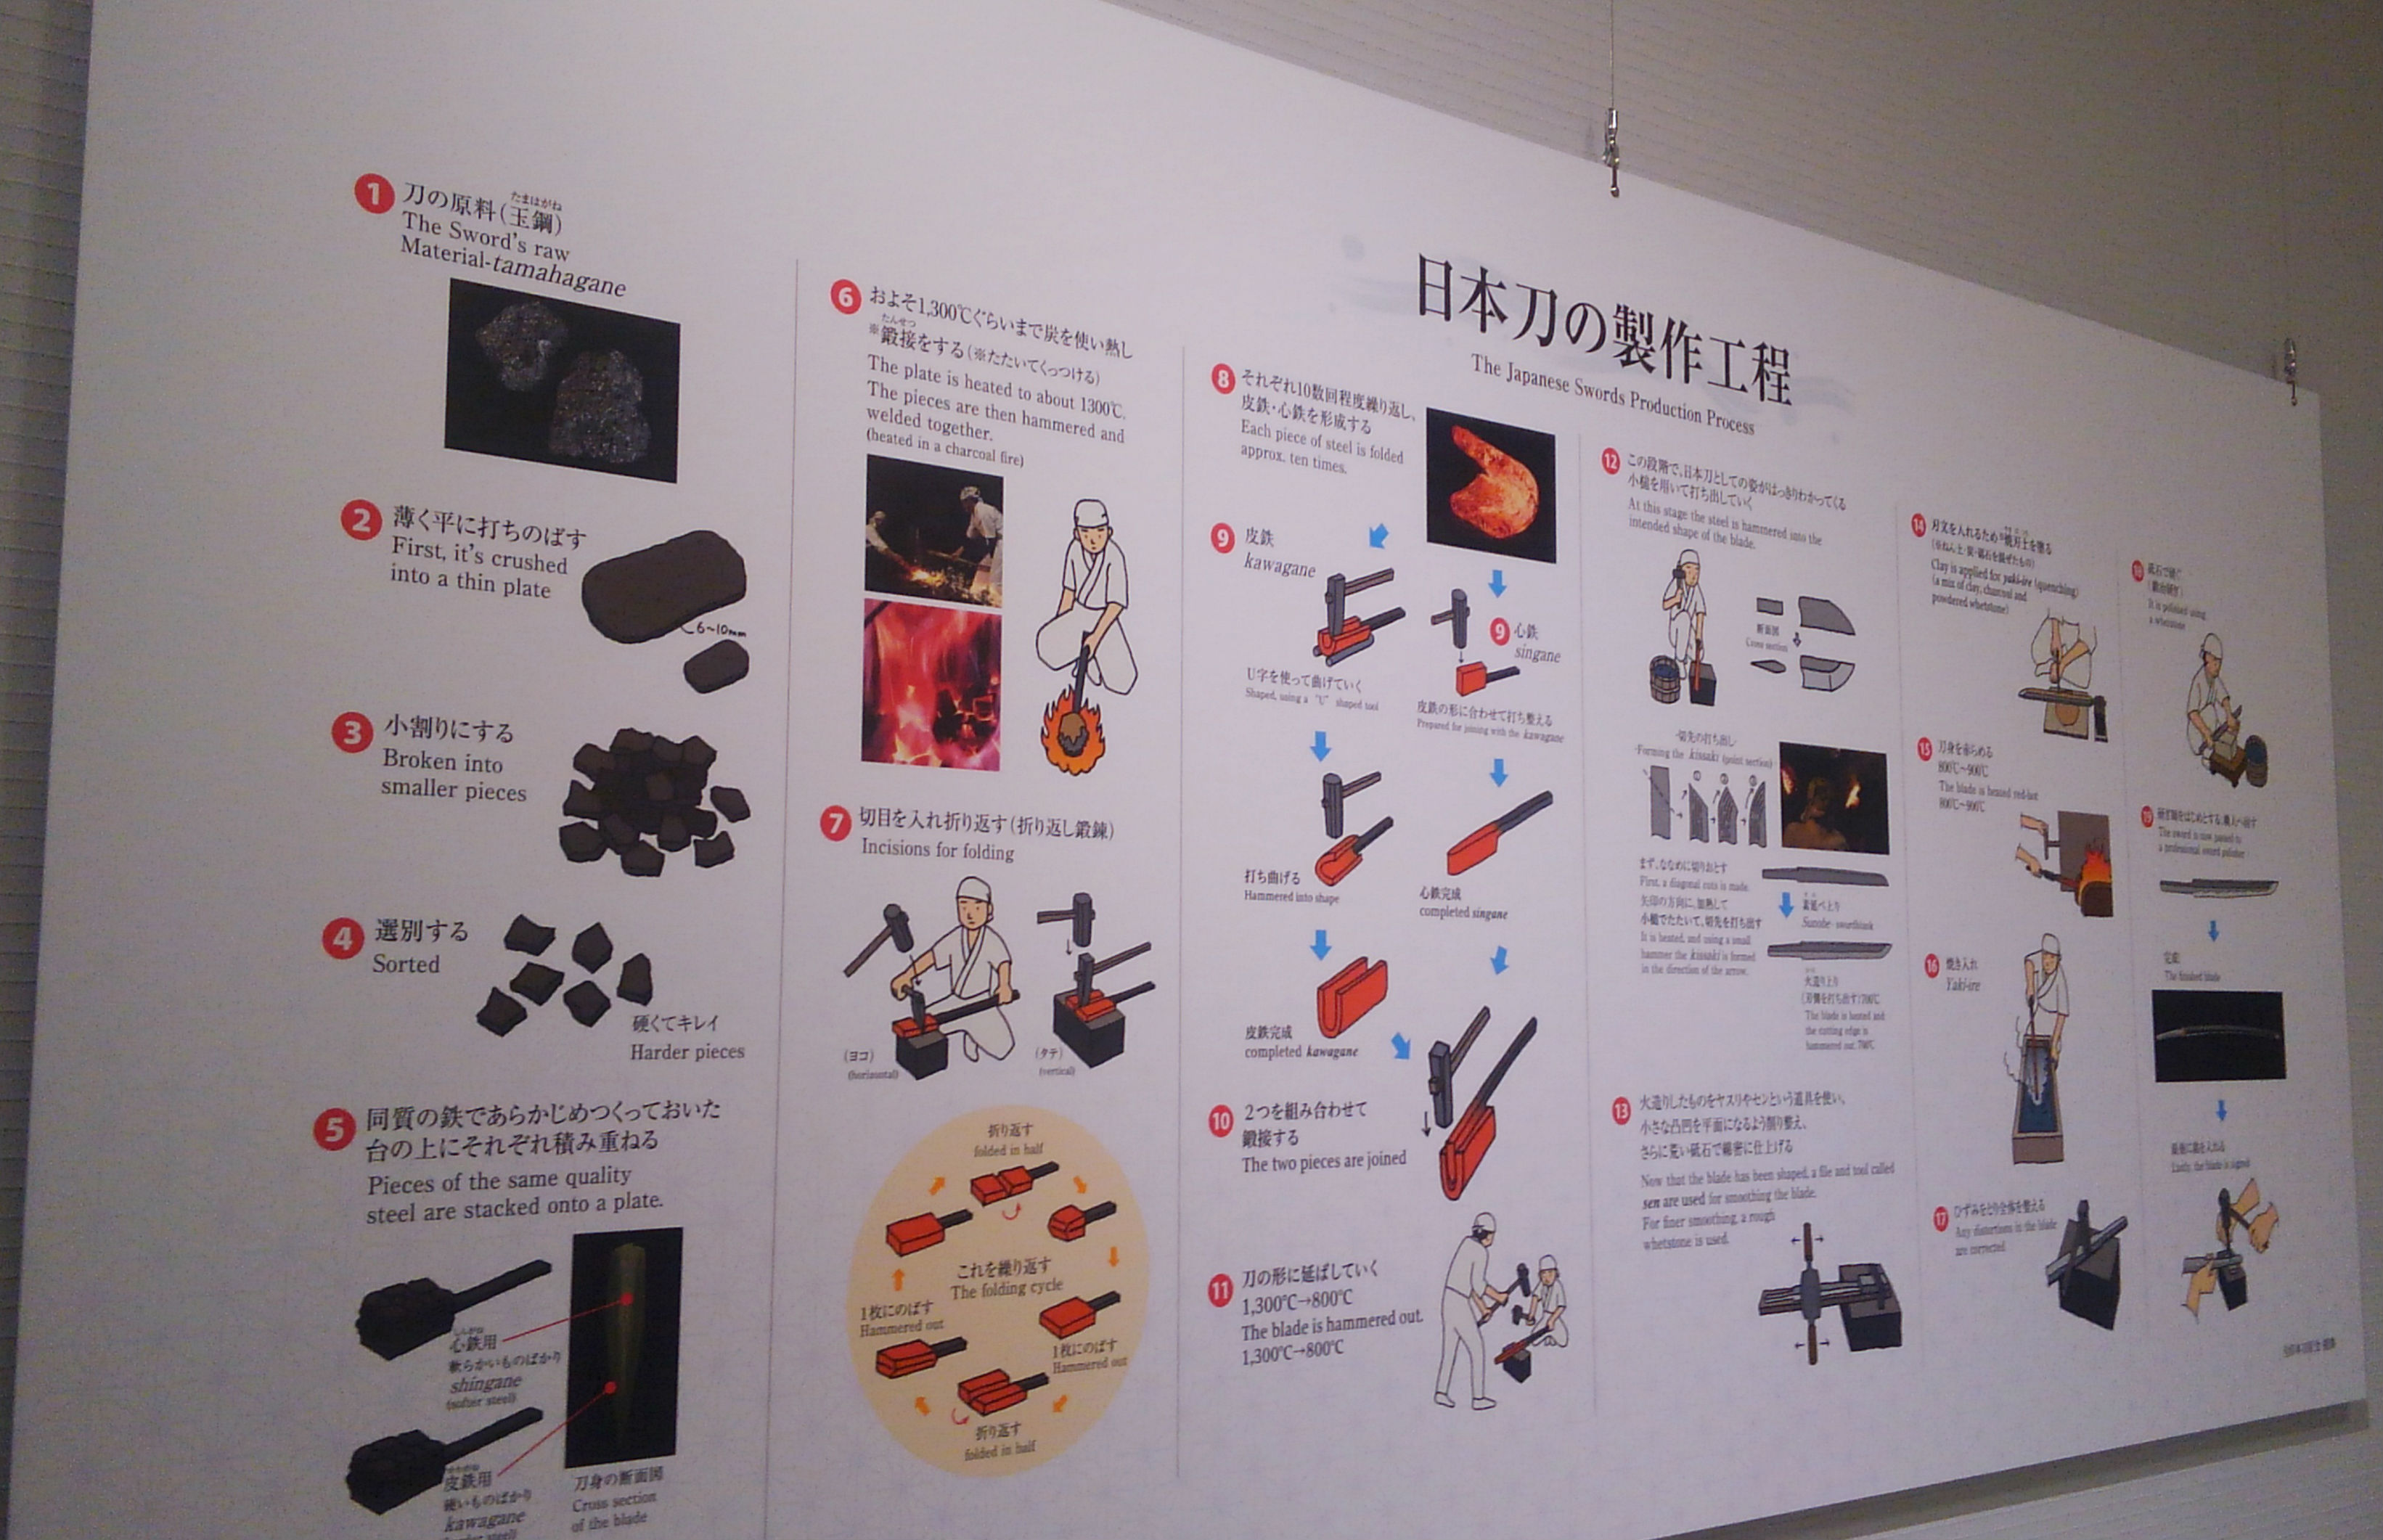 両国刀剣博物館1F情報コーナーの日本刀の作り方